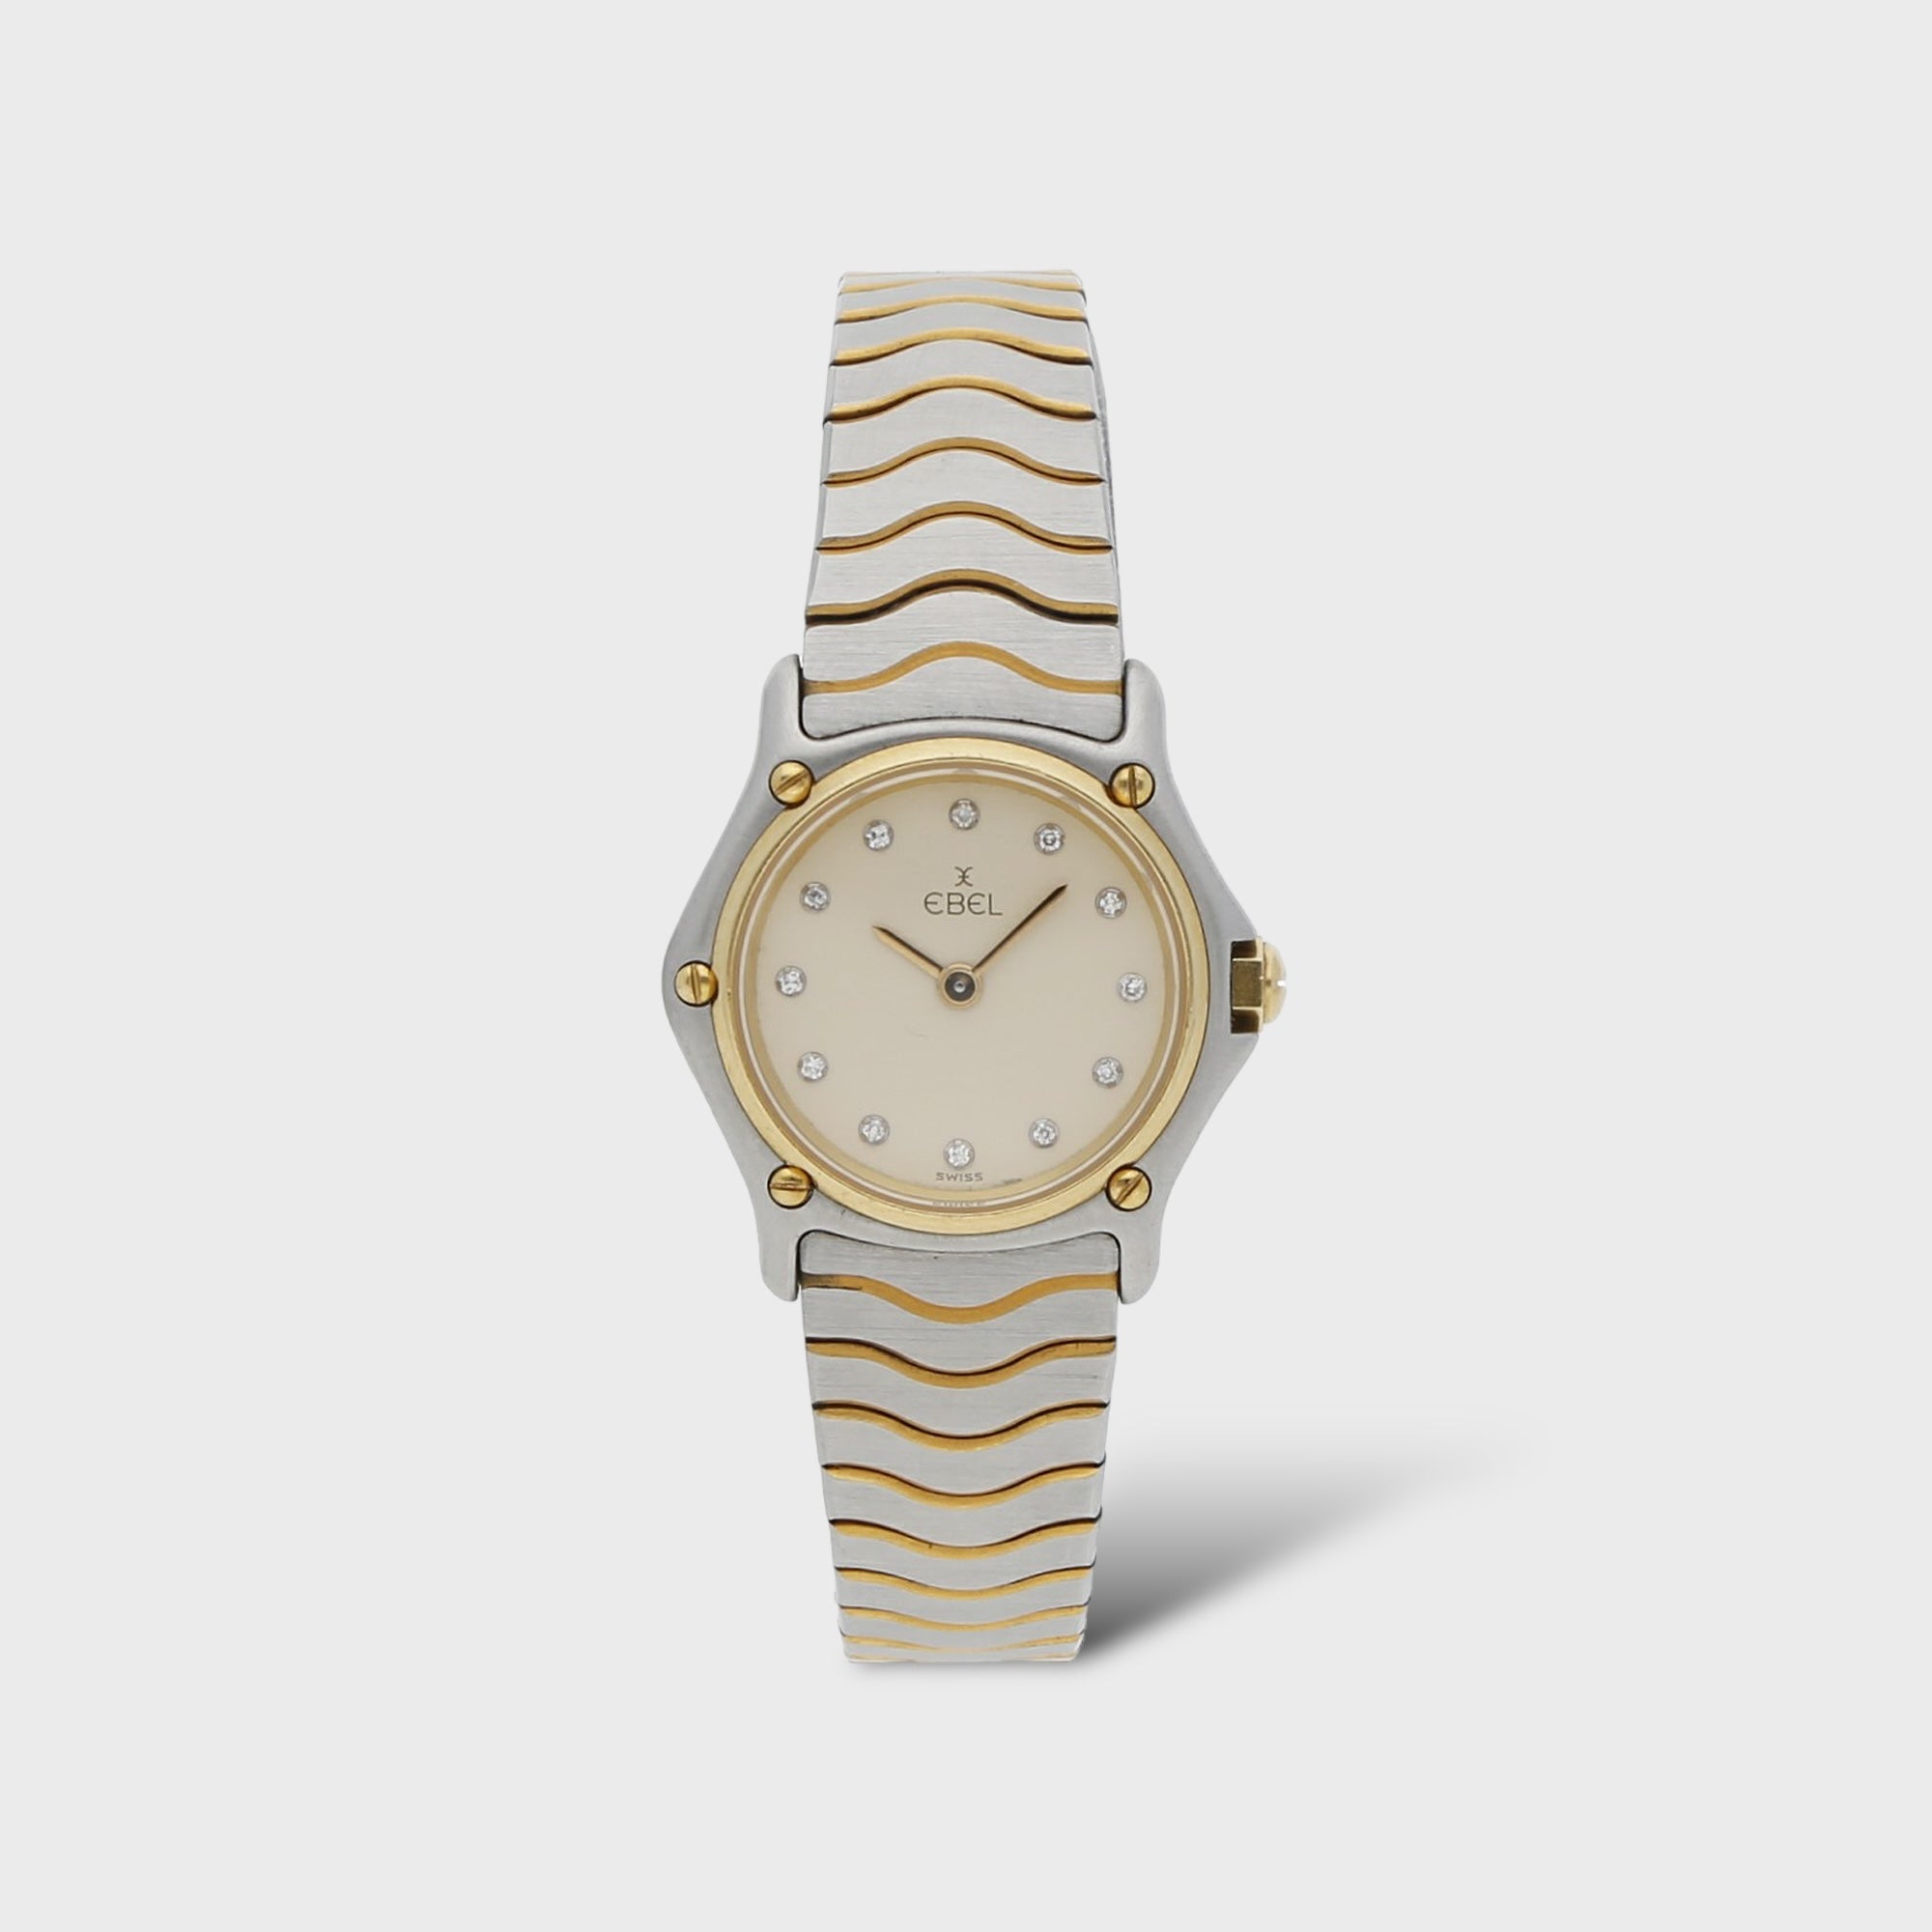 Second Hand ebel Uhr jetzt online kaufen auf kaleaz.